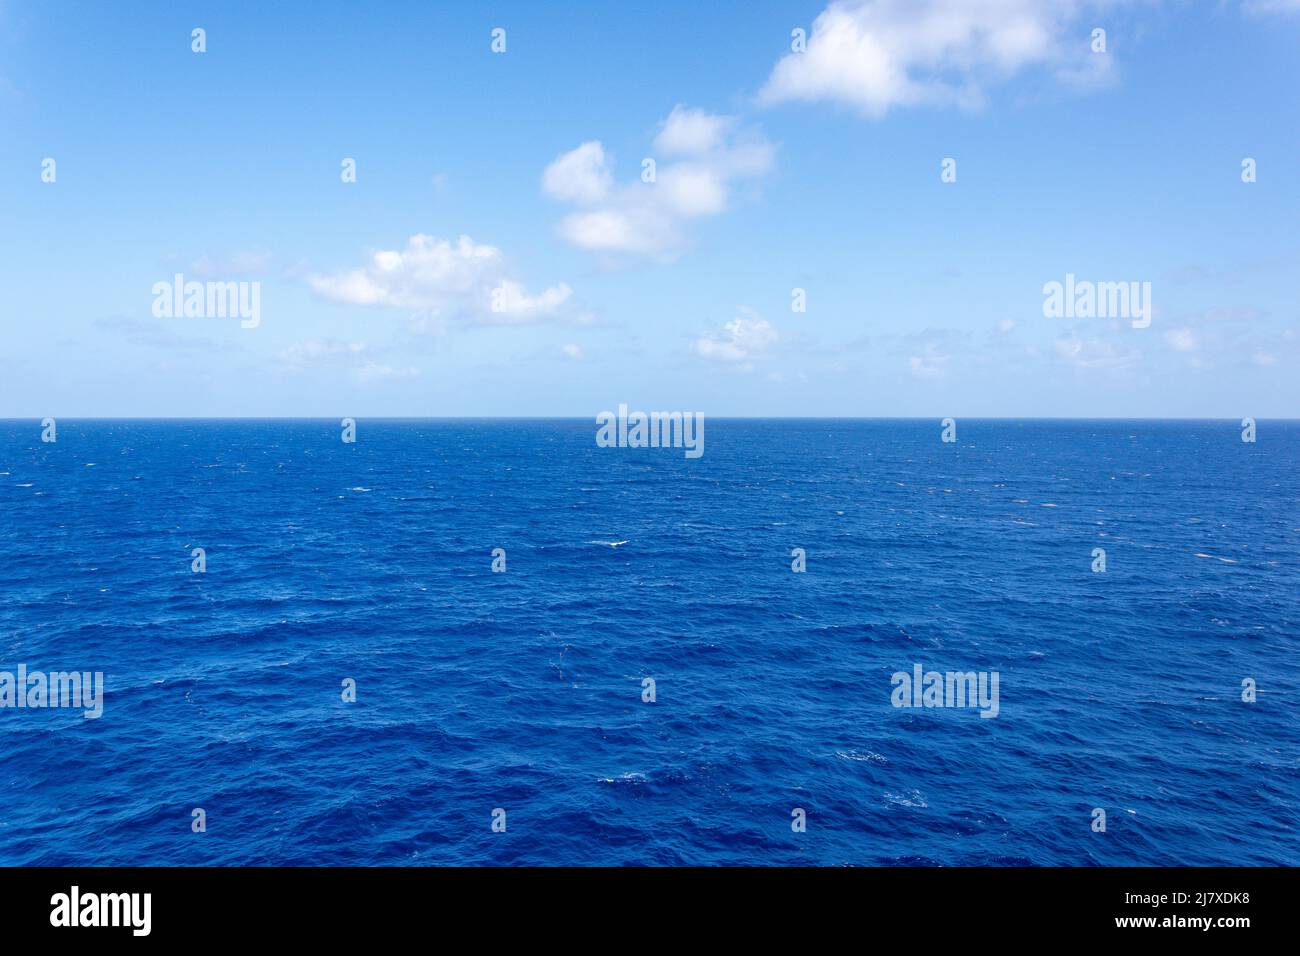 Vue sur la mer et l'horizon depuis le pont du bateau de croisière Marella Explorer II, Mer des Caraïbes, grandes Antilles, Caraïbes Banque D'Images